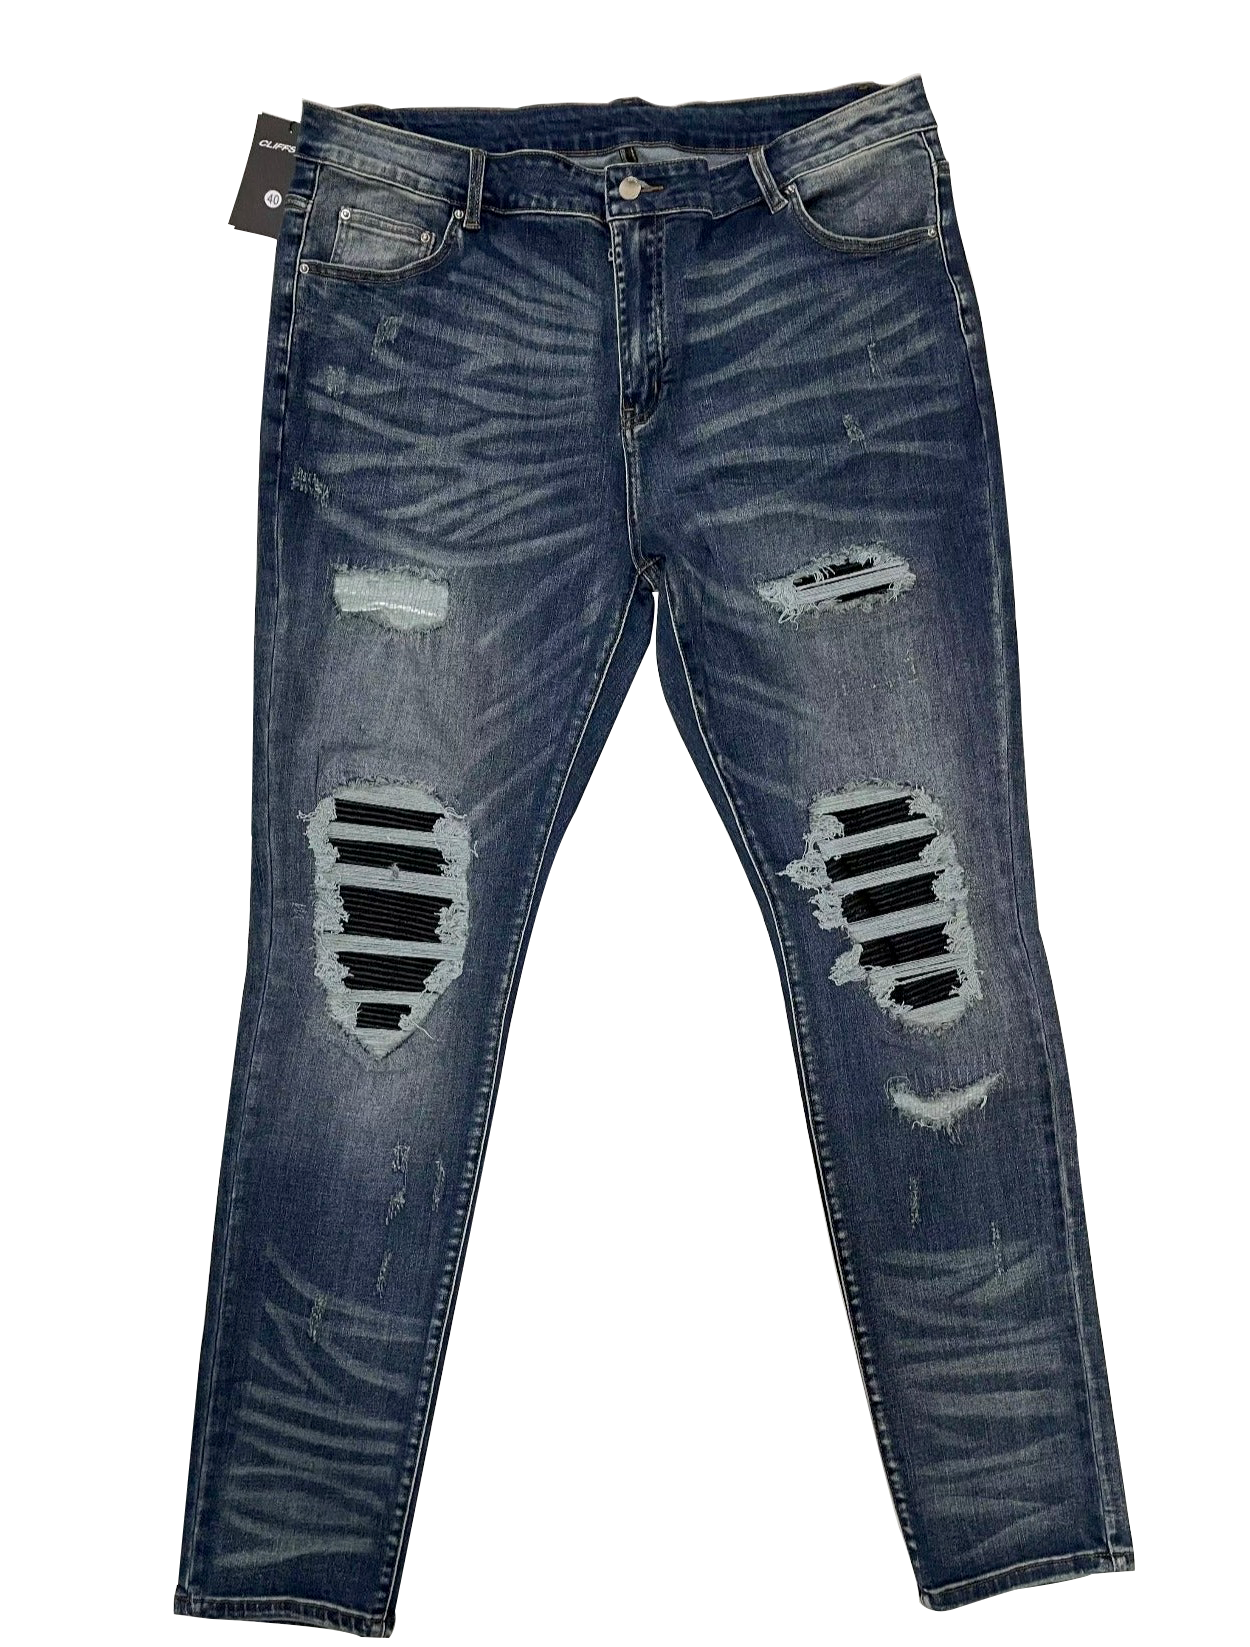 CSL "Dark Water" Jeans